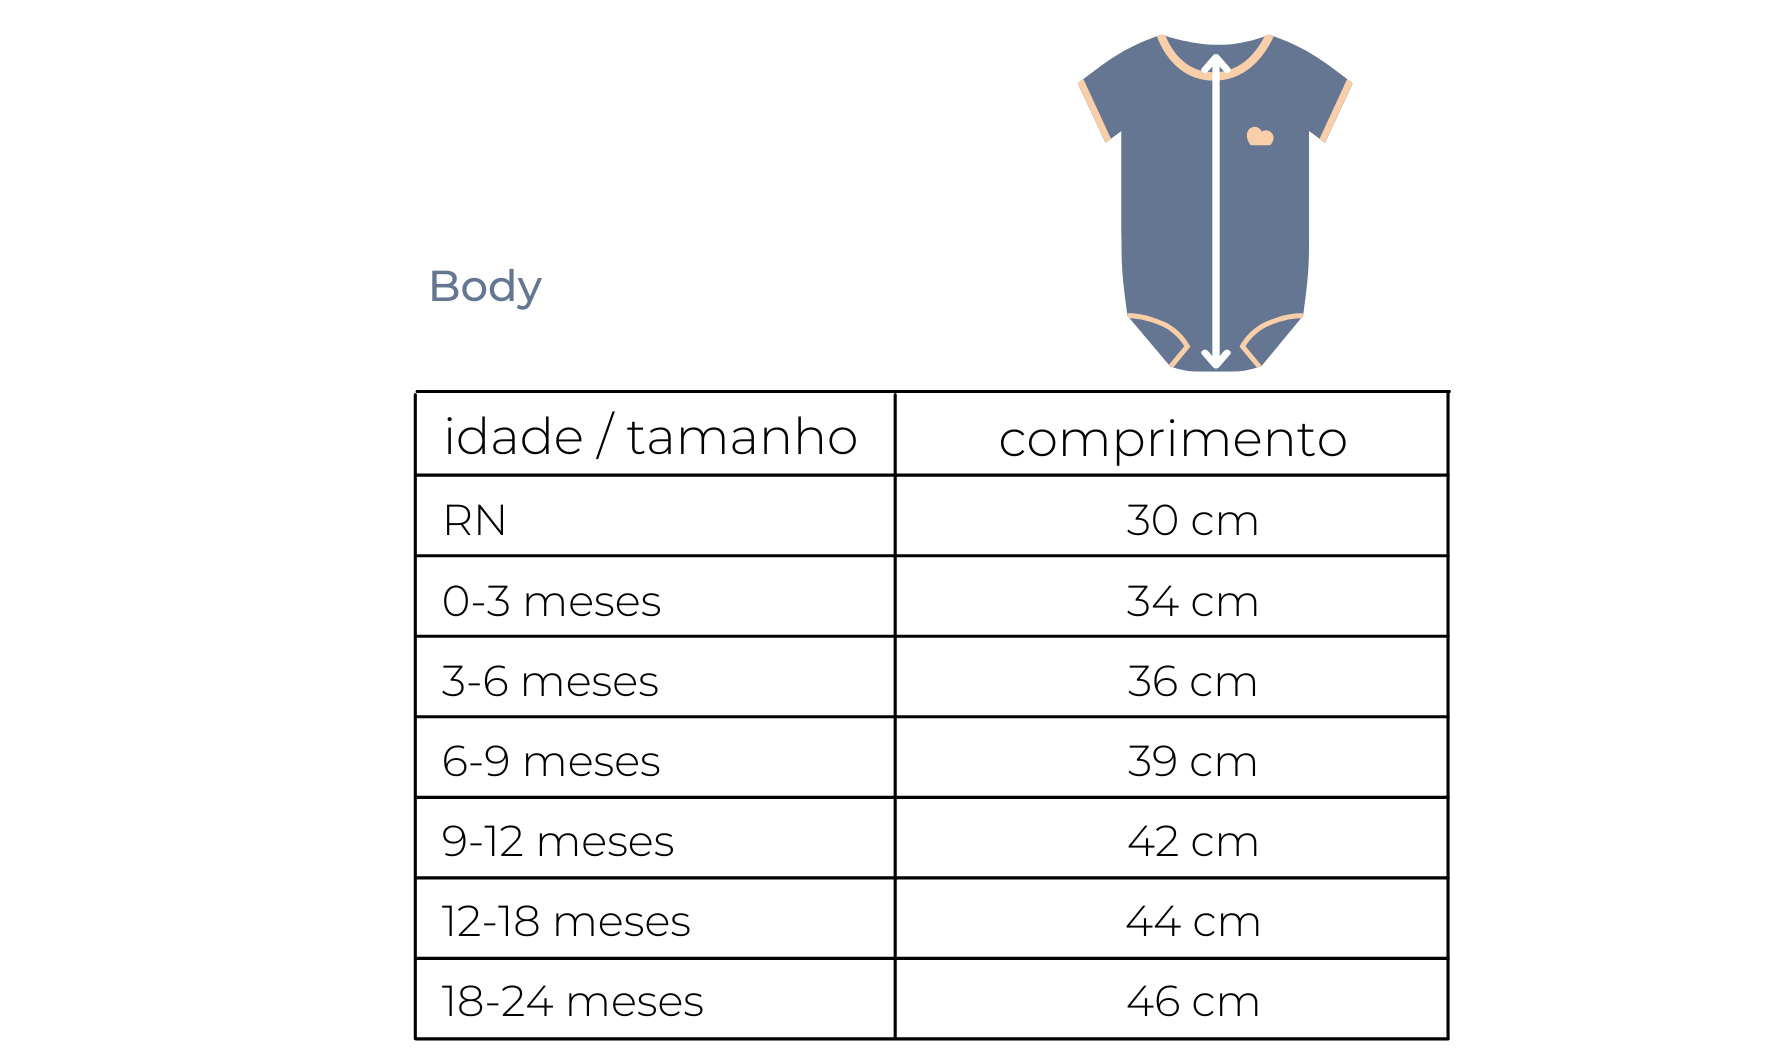 tabela de medidas body infantil